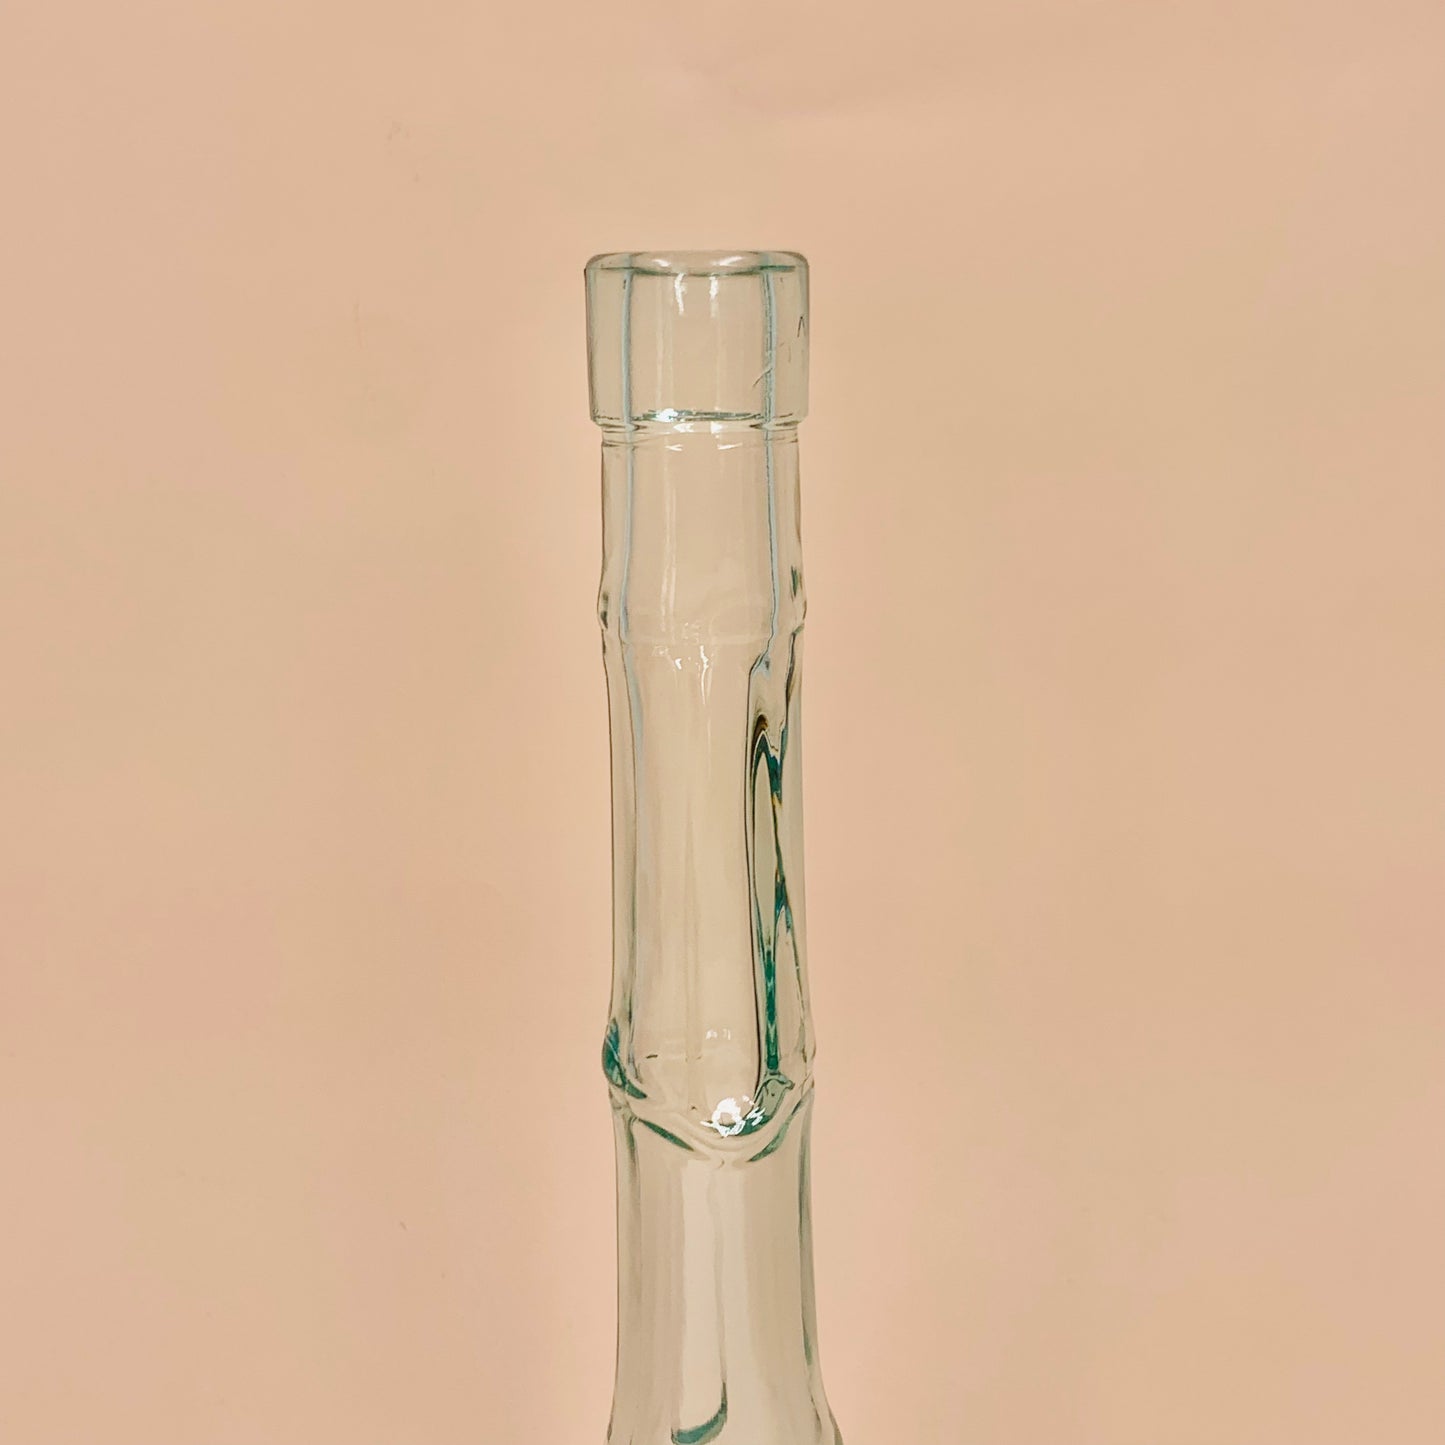 Retro Vetreria Etrussa Italian glass bottle vase with bamboo rings pattern